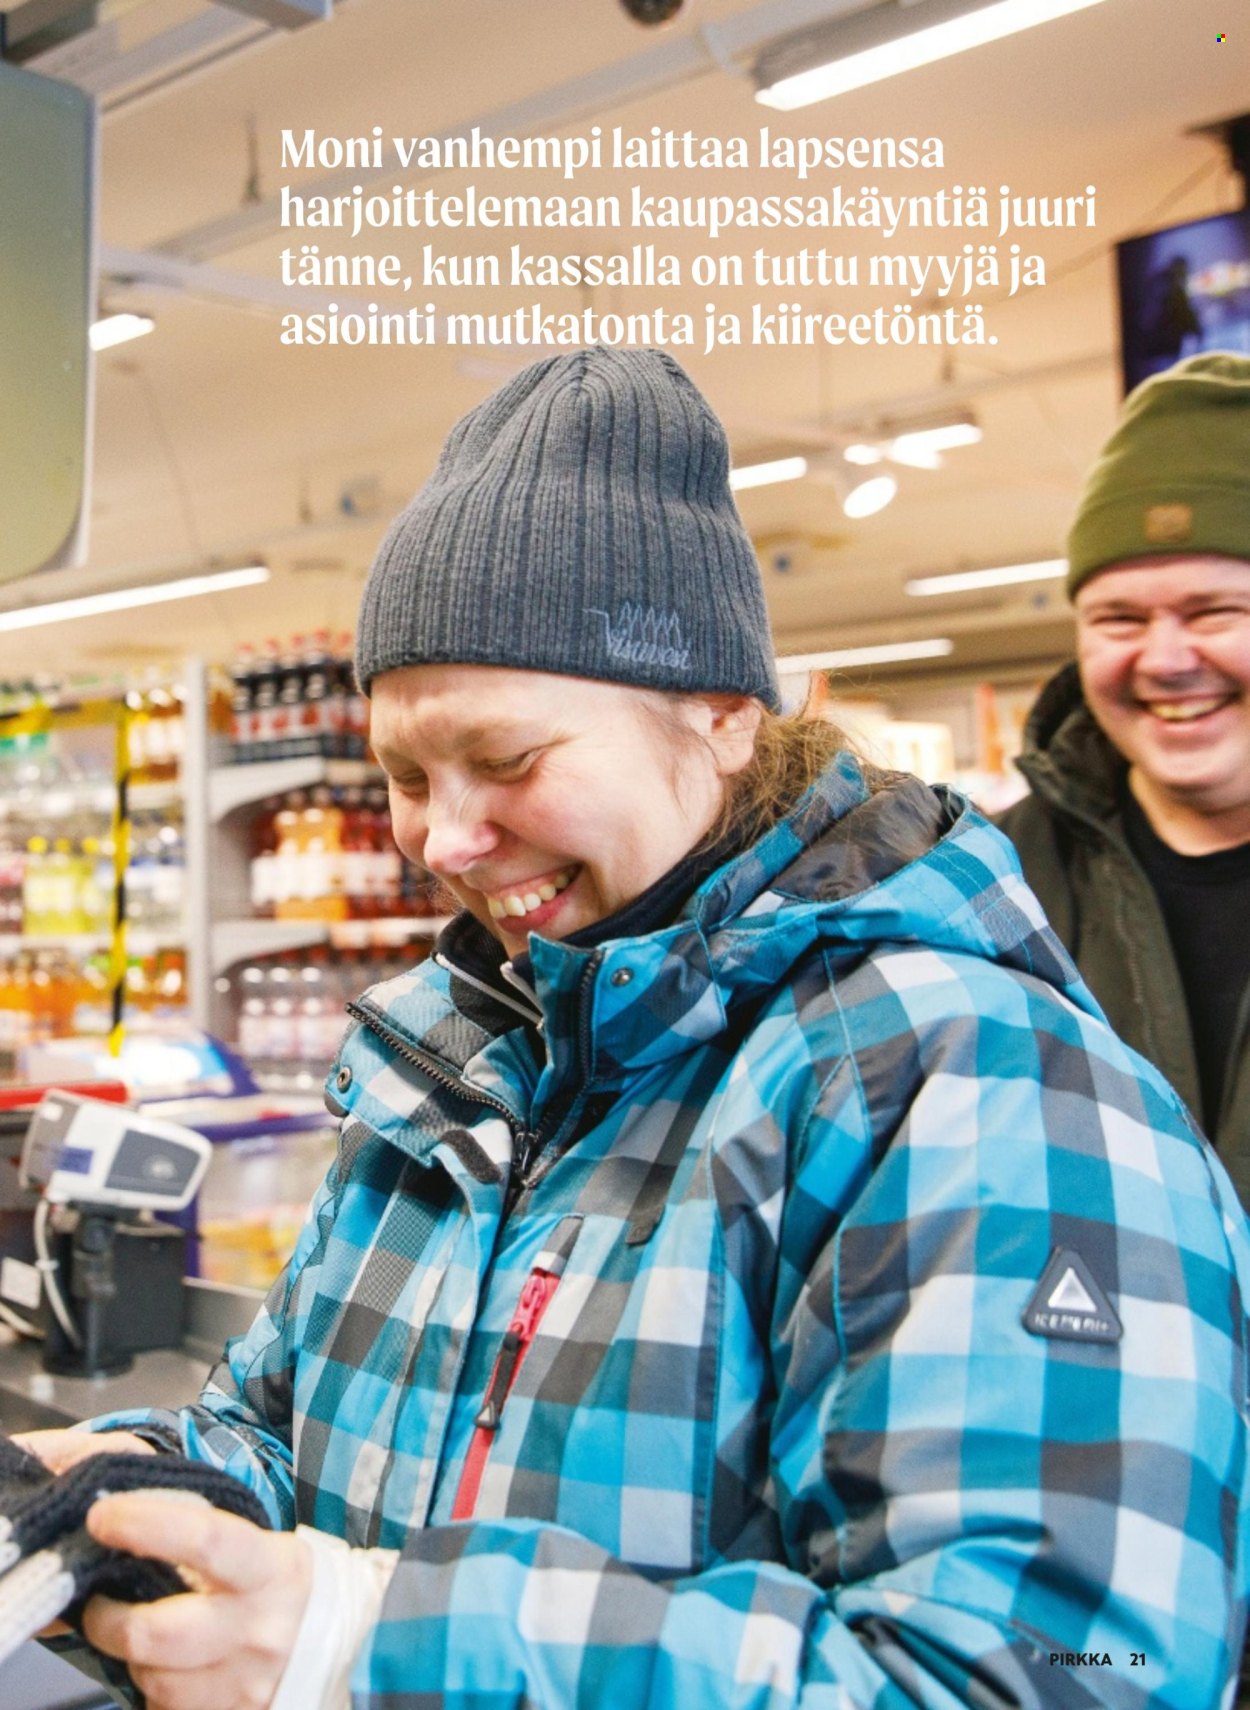 K-Supermarket tarjouslehti  - 27.03.2024 - 23.04.2024.